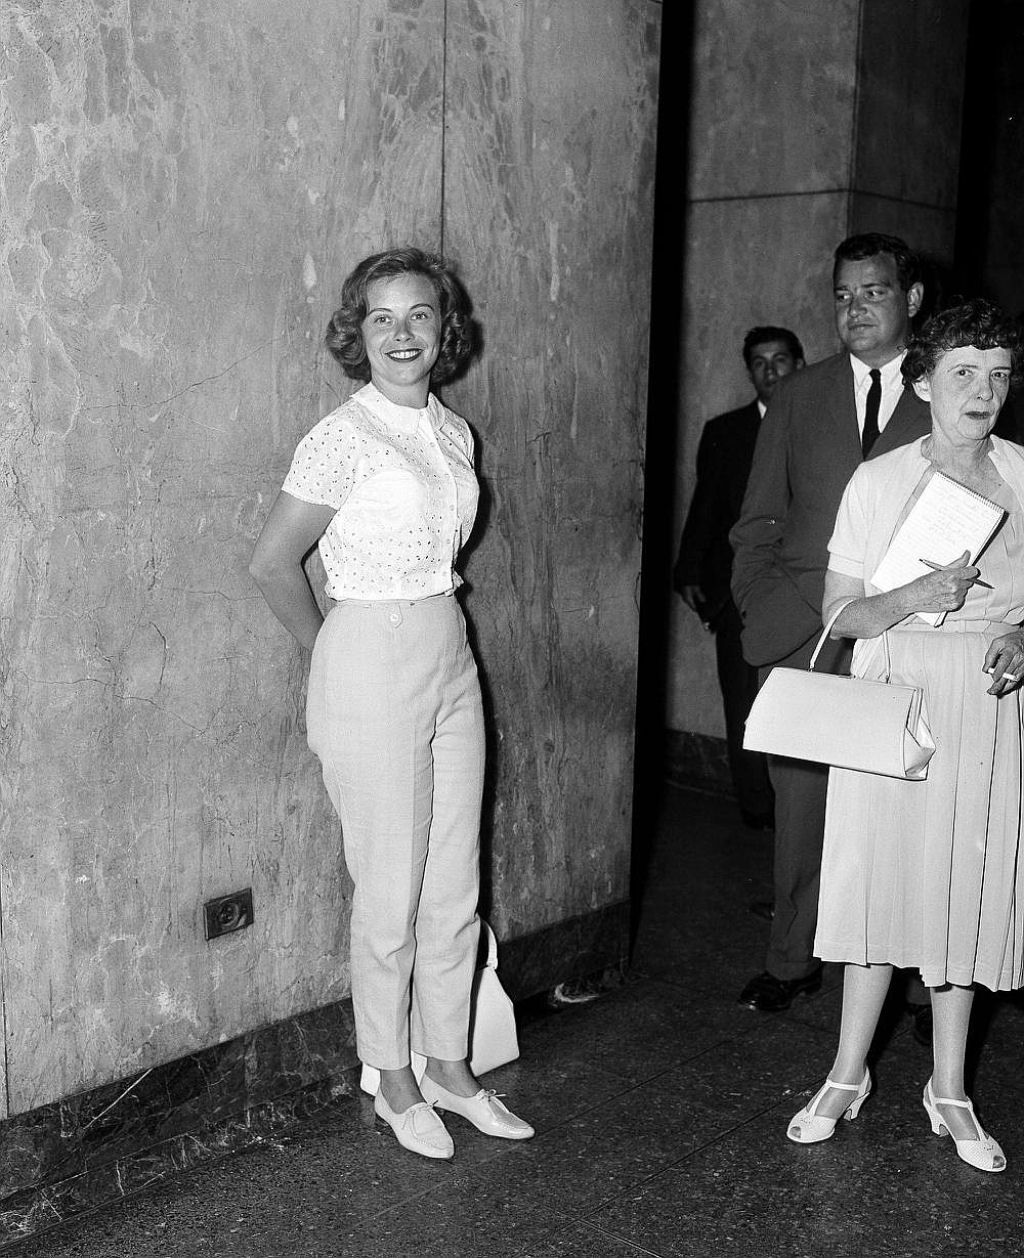 Em 1960 essa mulher foi expulsa do tribunal por usar calças